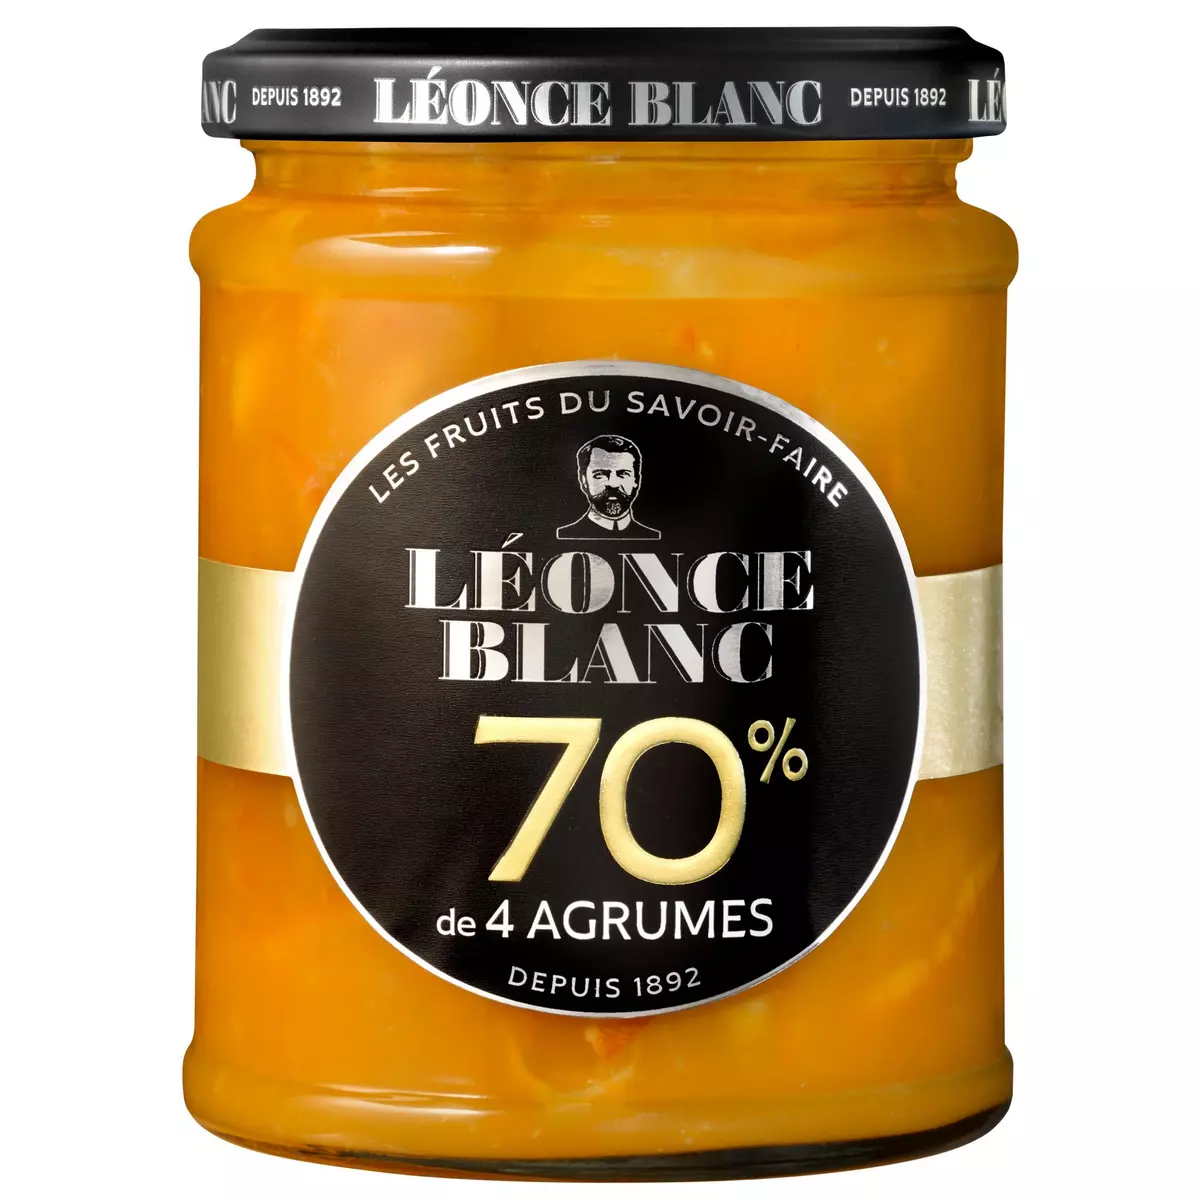 LEONCE BLANC Confiture de 4 agrumes 70% 320g